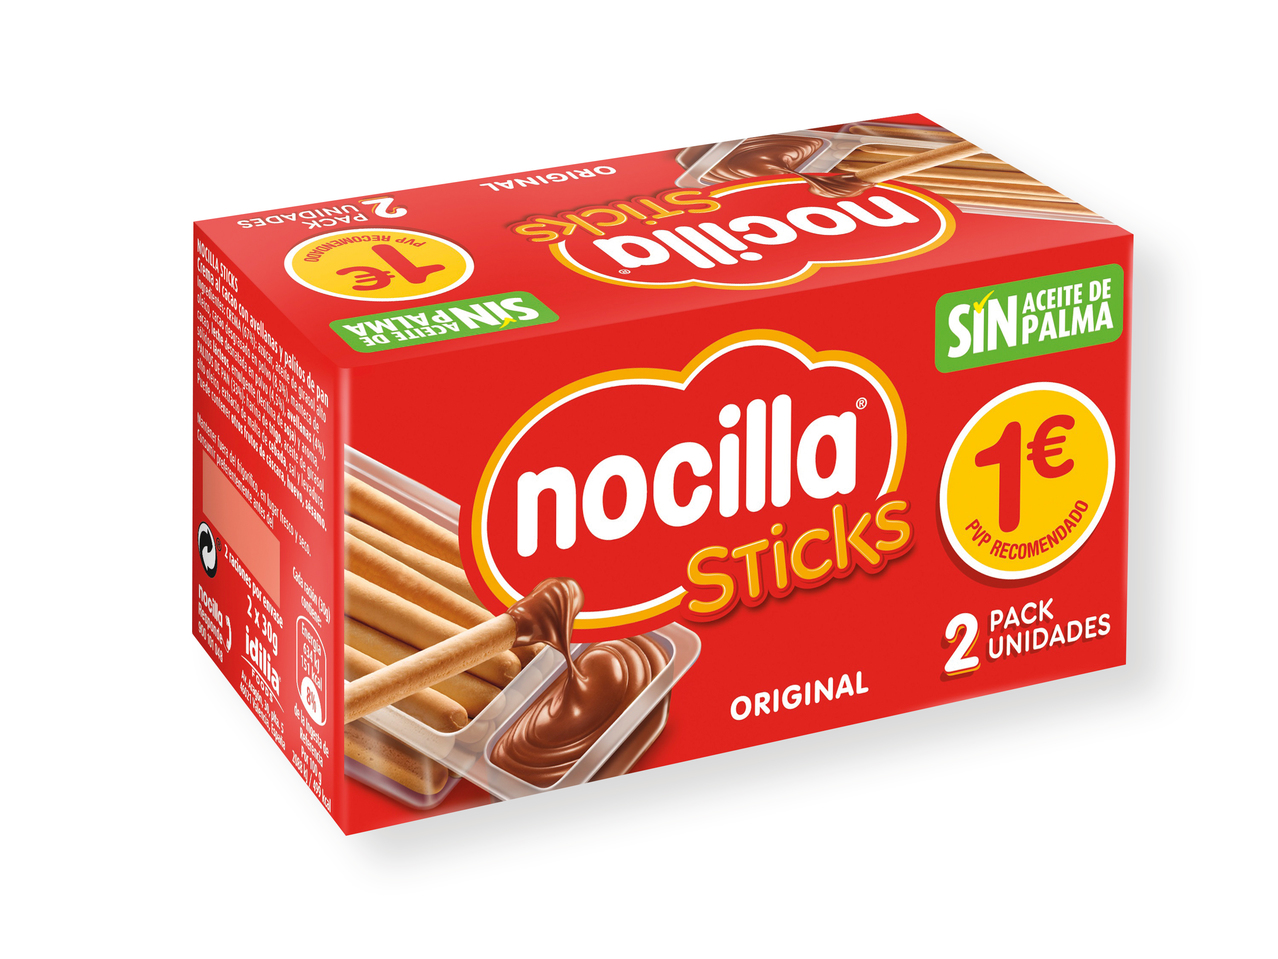 'Nocilla(R)' Nocilla sticks